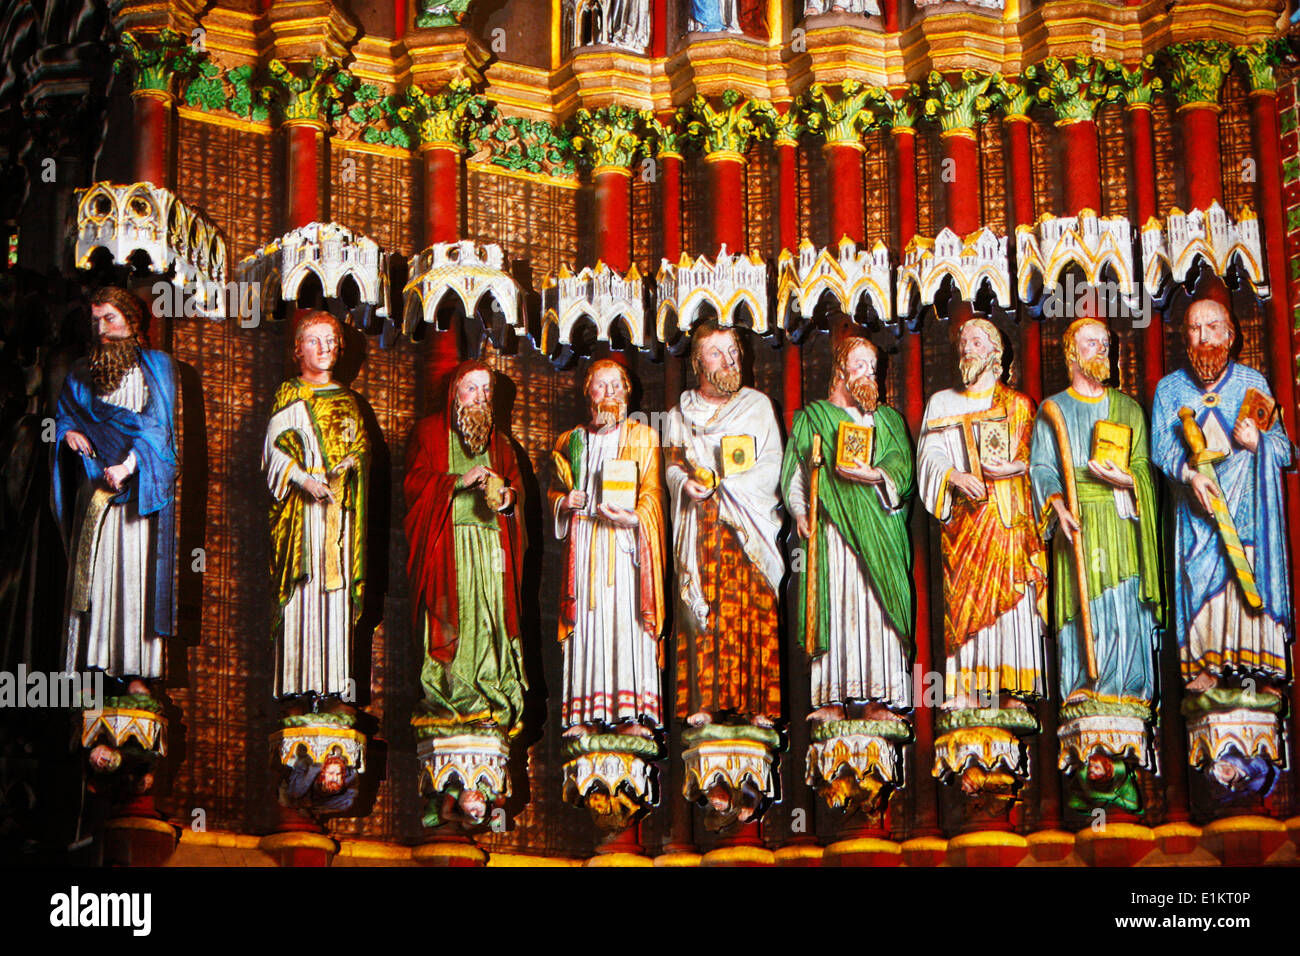 Amiens cathedral illumination Stock Photo